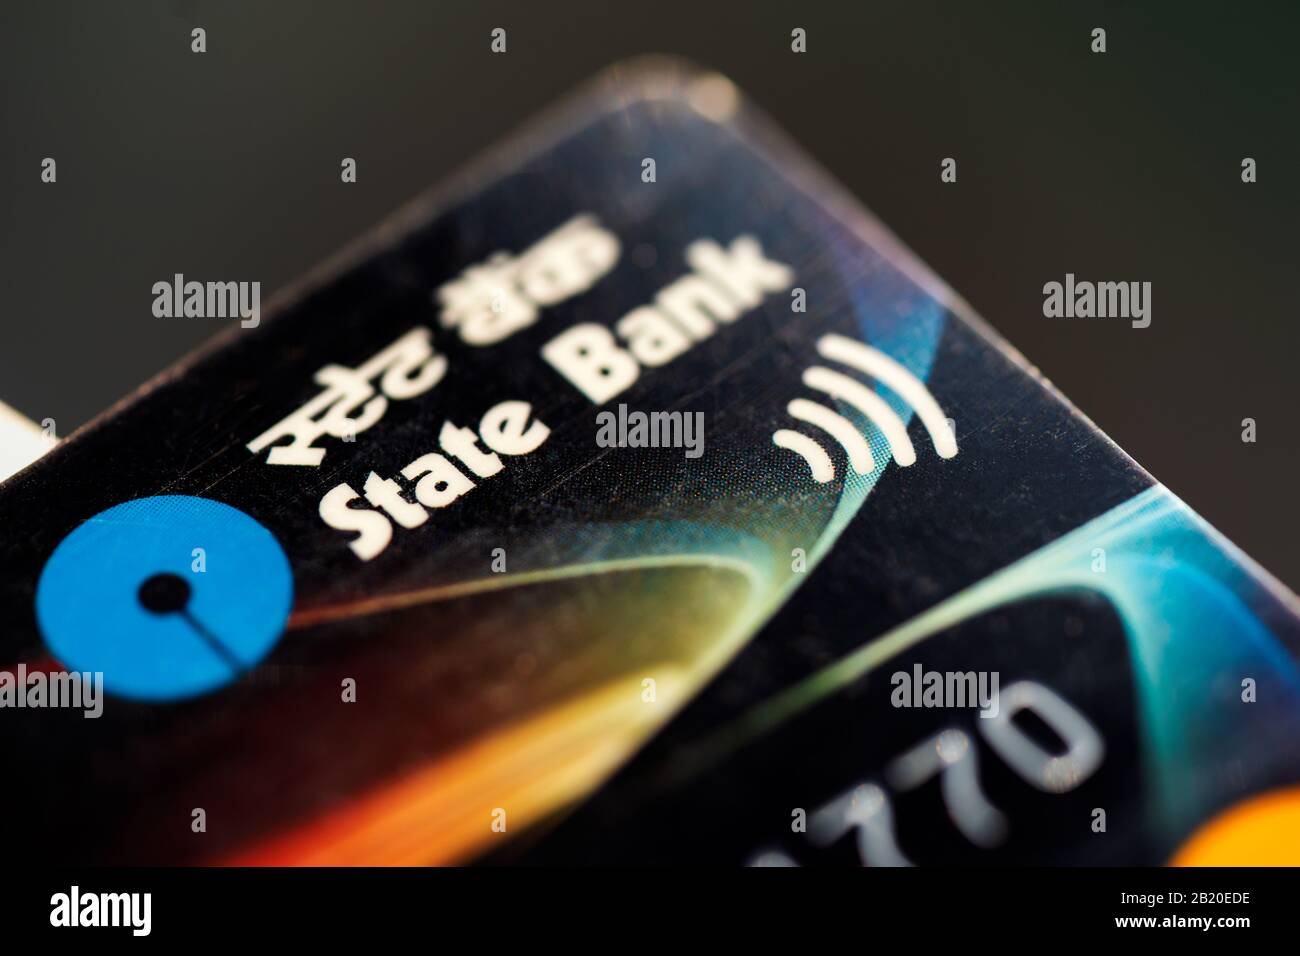 Macro-photographie de clôture de carte de crédit ou de débit SBI avec focalisation sélective pour l'arrière-plan. Concept pour les cartes OSMŒ IPO, mode de paiement, transaction, banque Banque D'Images